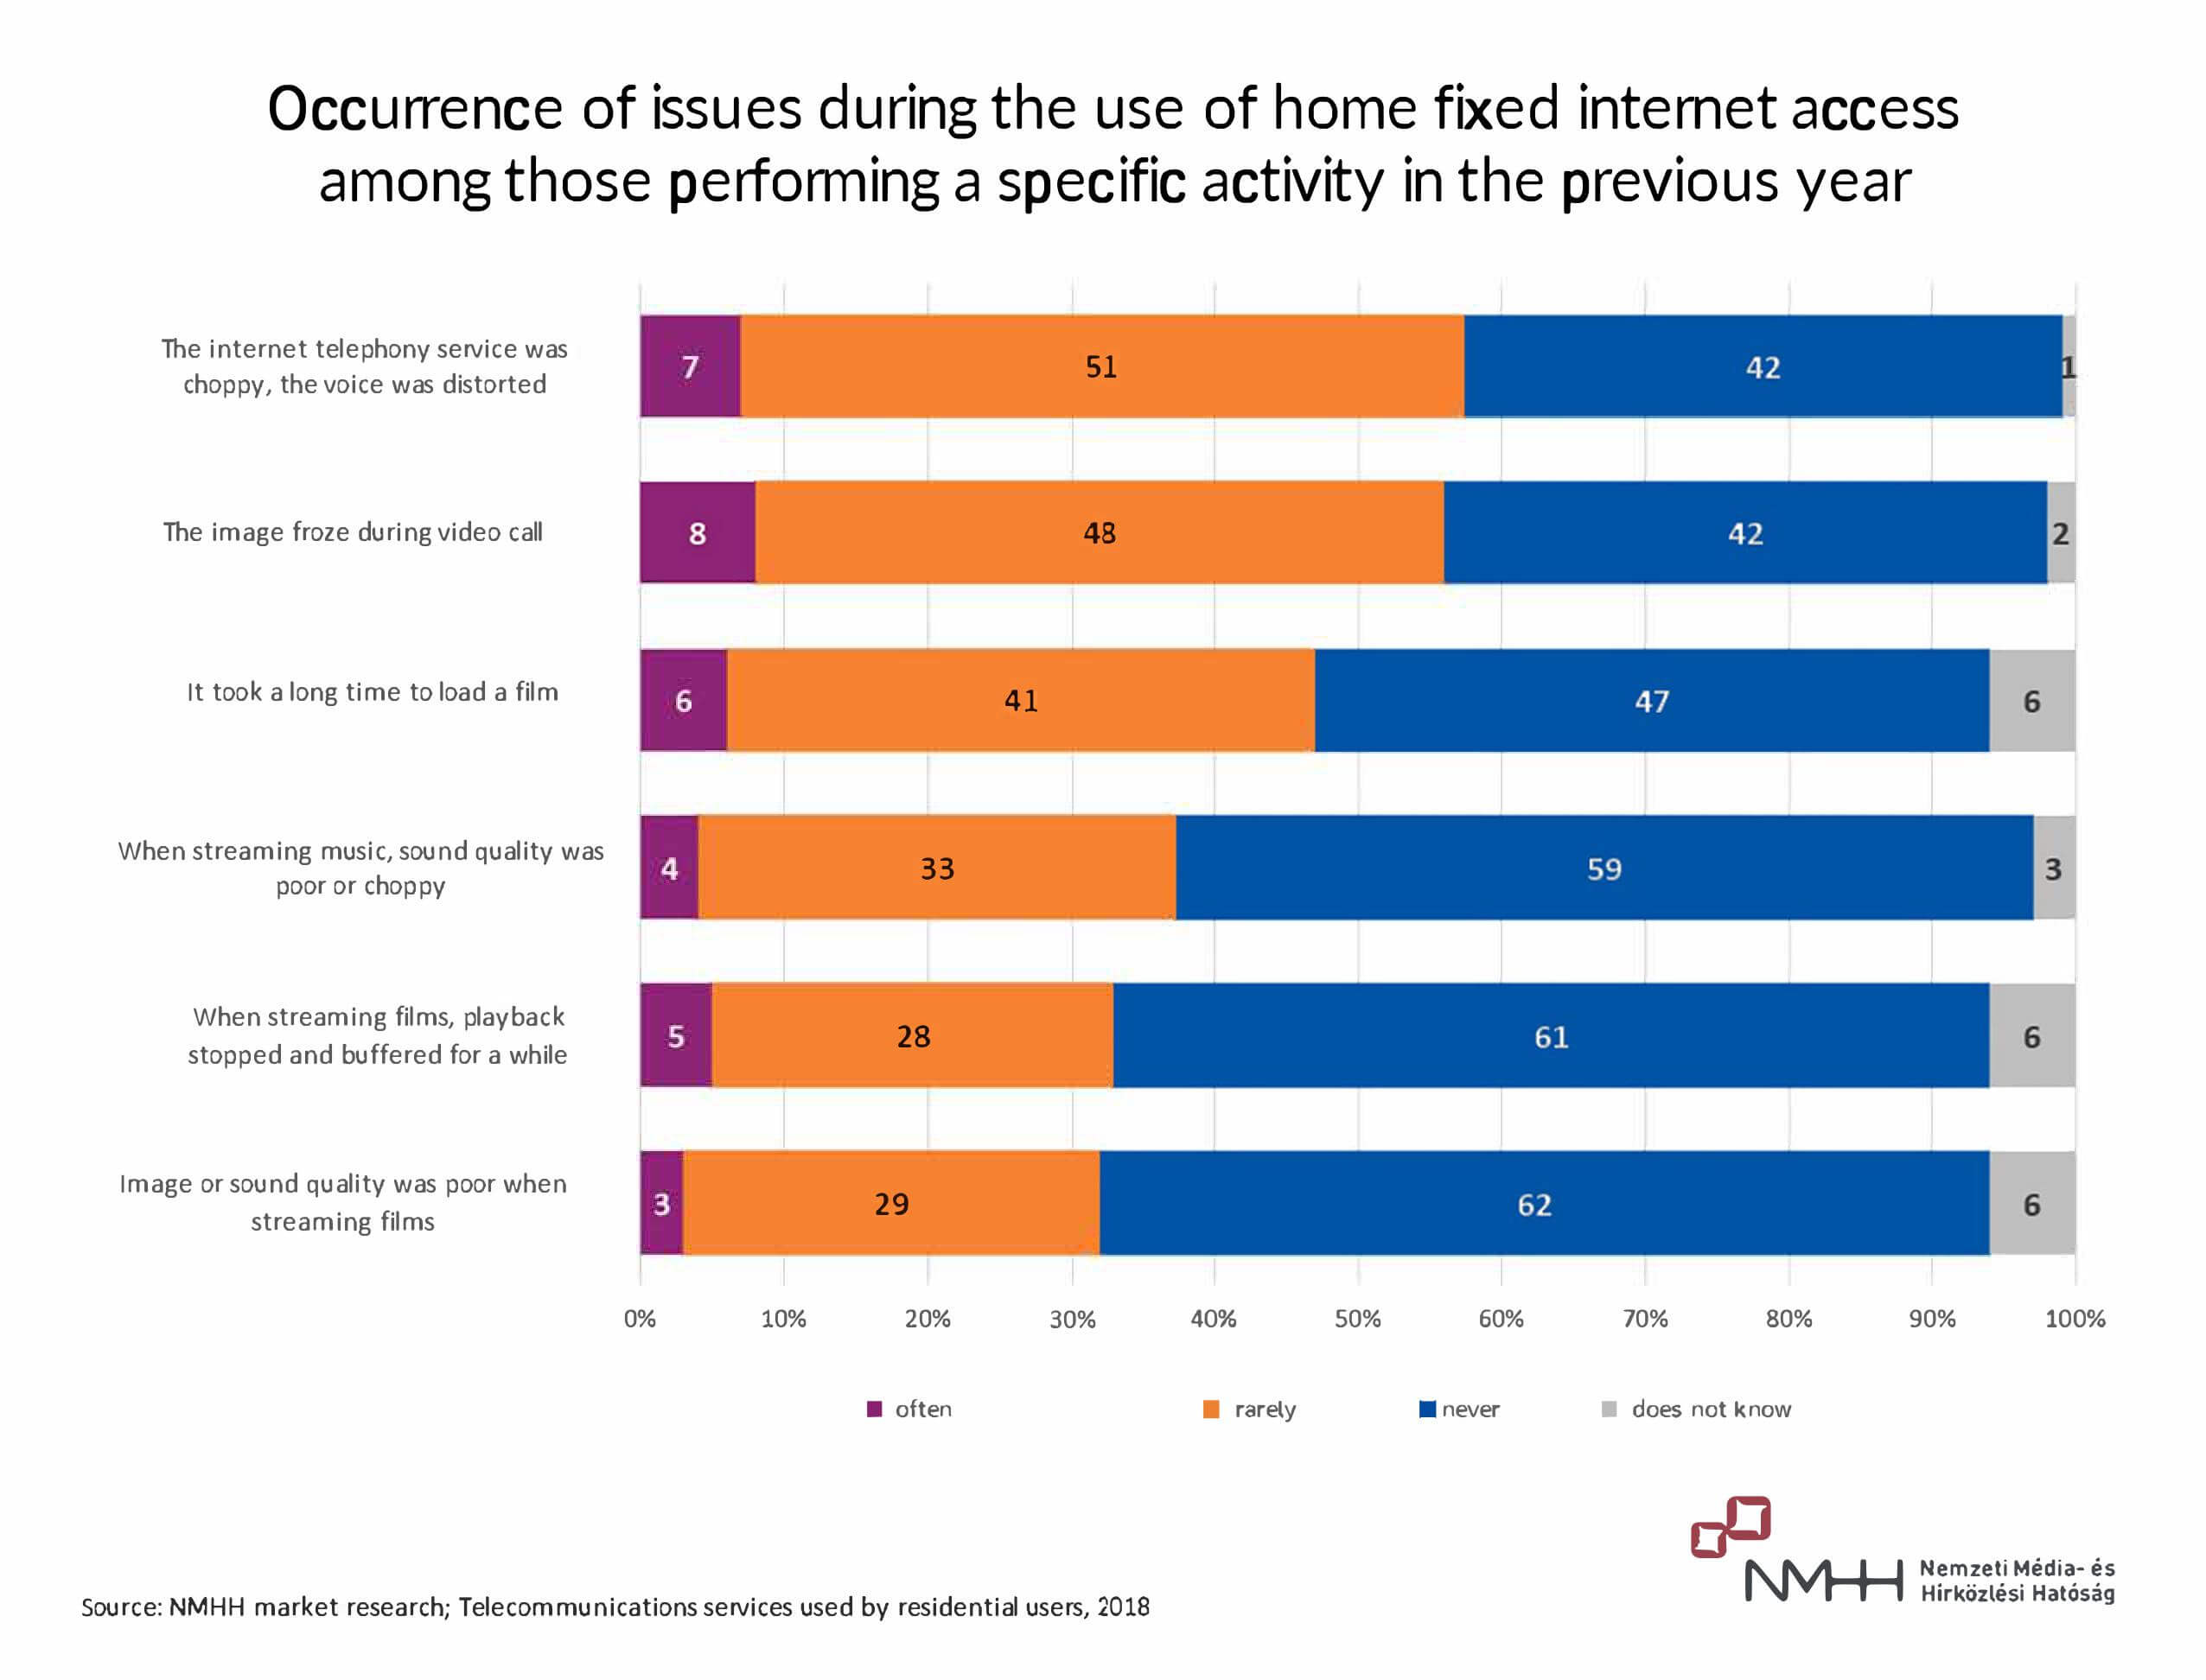 Problémák előfordulása az otthoni vezetékes internet használata során a megelőző egy évben az adott tevékenységet végzők körében